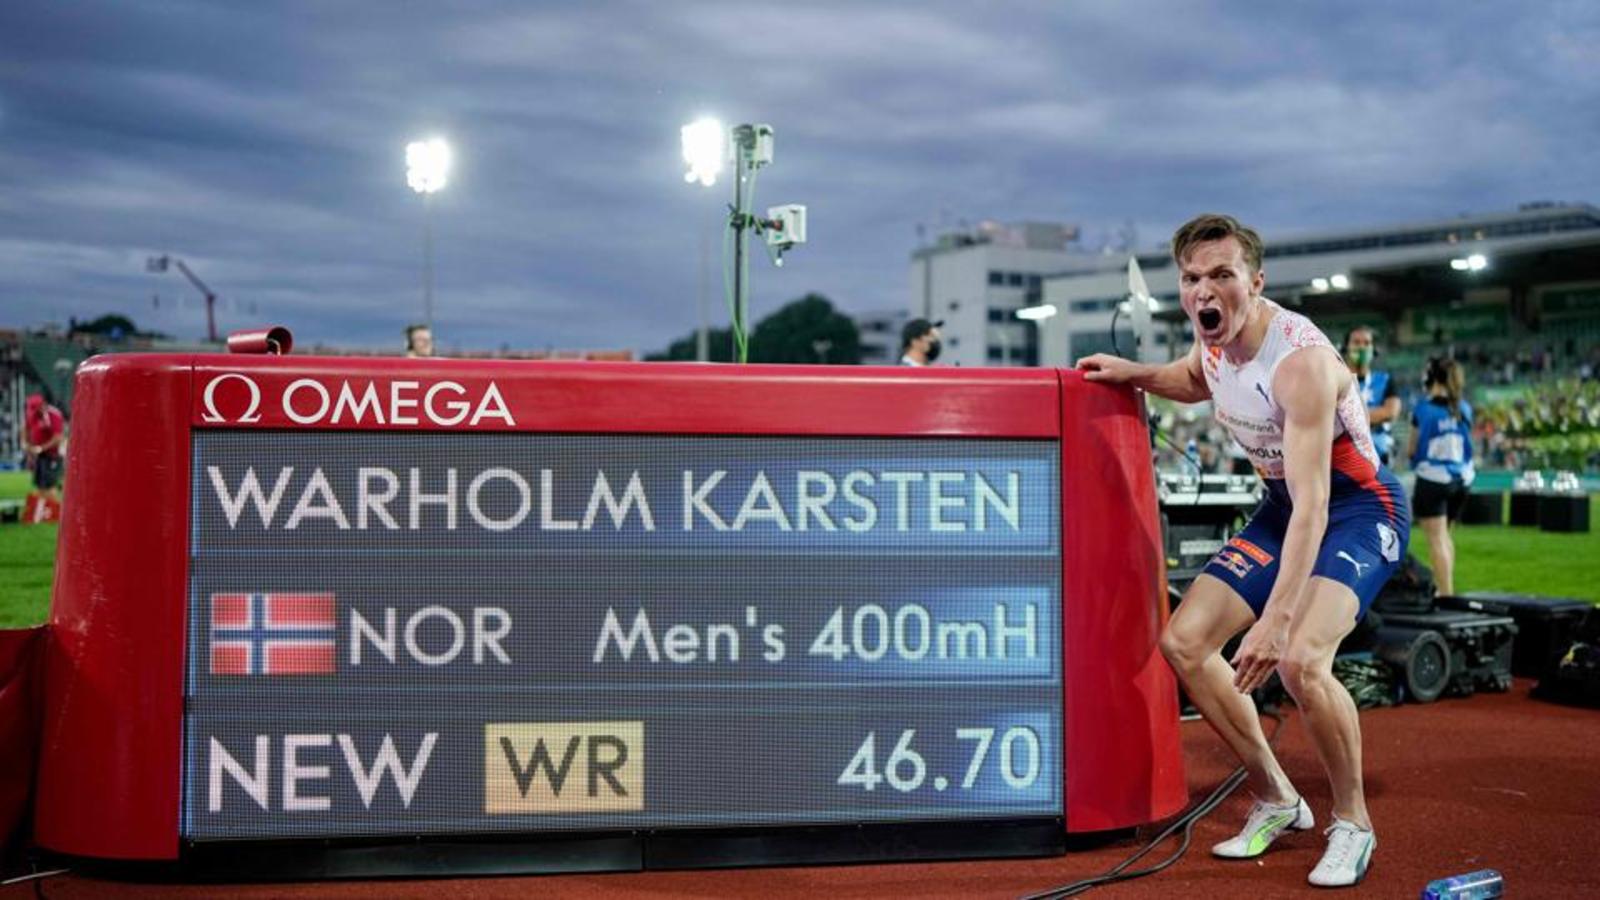 Норвегия легкая атлетика. Карстен Вархольм рекорд. Карстен Вархольм норвежский легкоатлет. Норвежский легкоатлет на 400 метров. Норвежец побил мировой рекорд в беге.